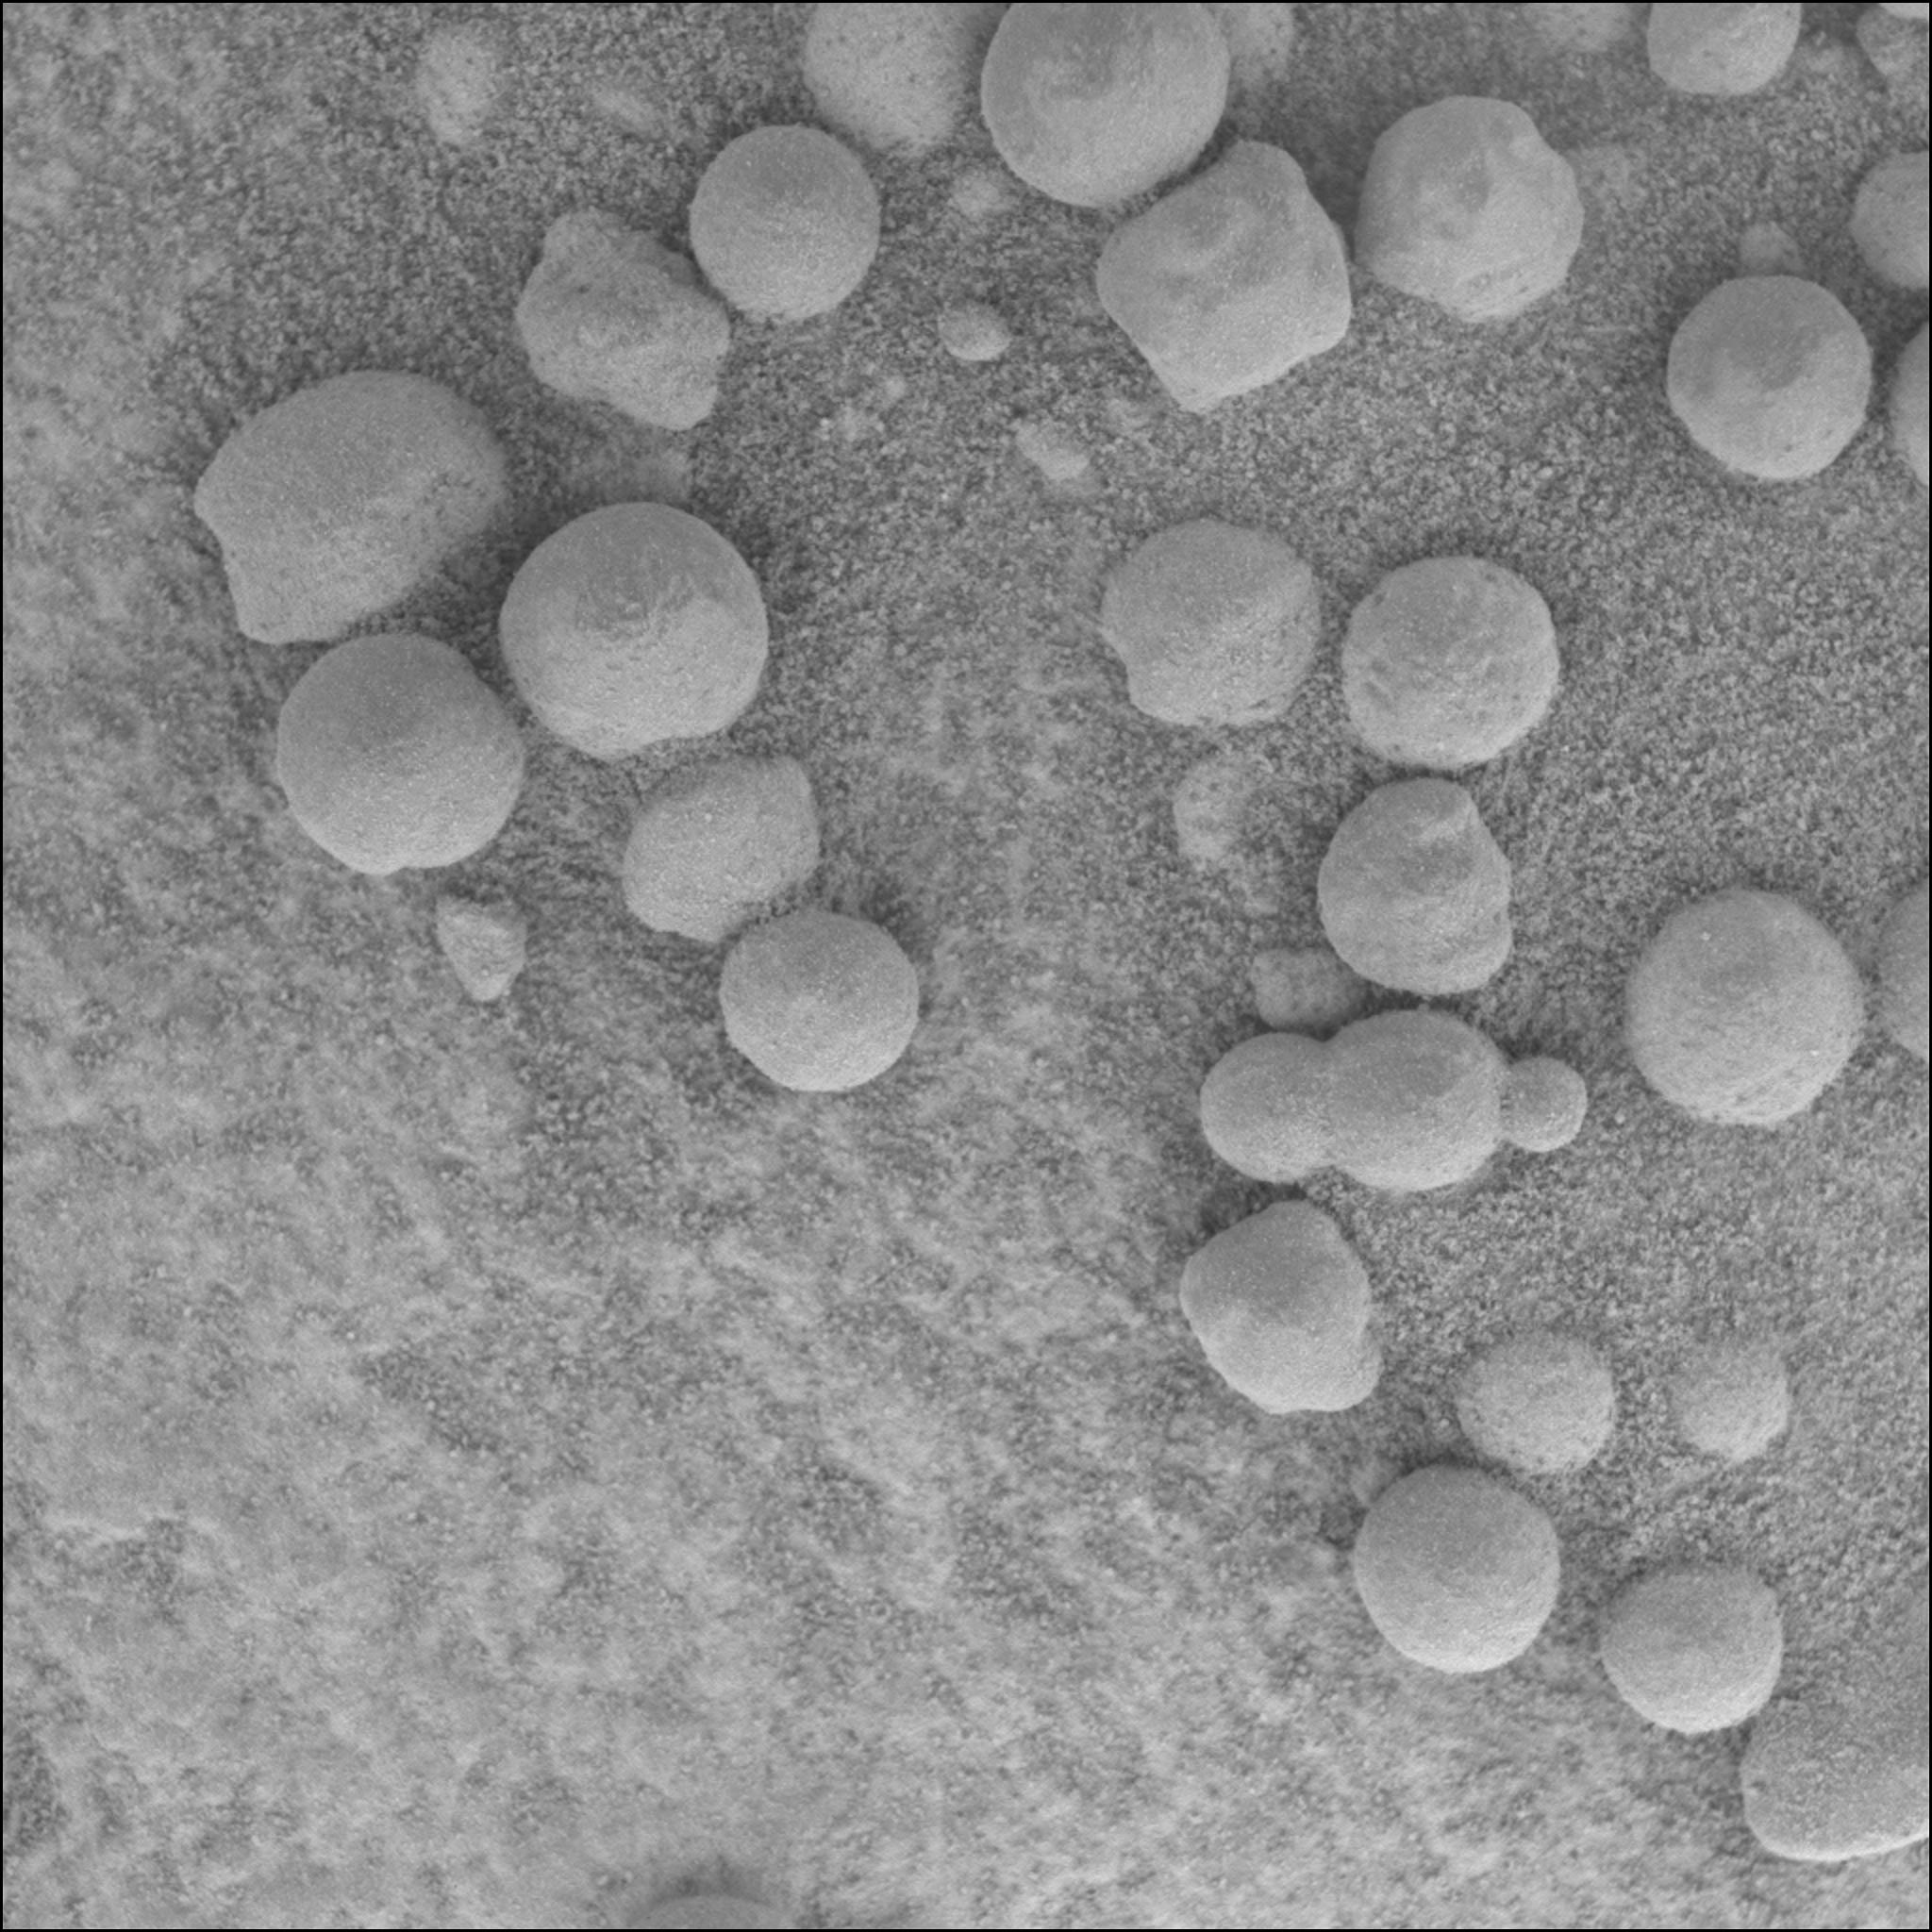 Les myrtilles trouves en 2004 par Opportunity contiennent d'importantes inclusions d'hmatites, riches en fer. Crdit: NASA/JPL